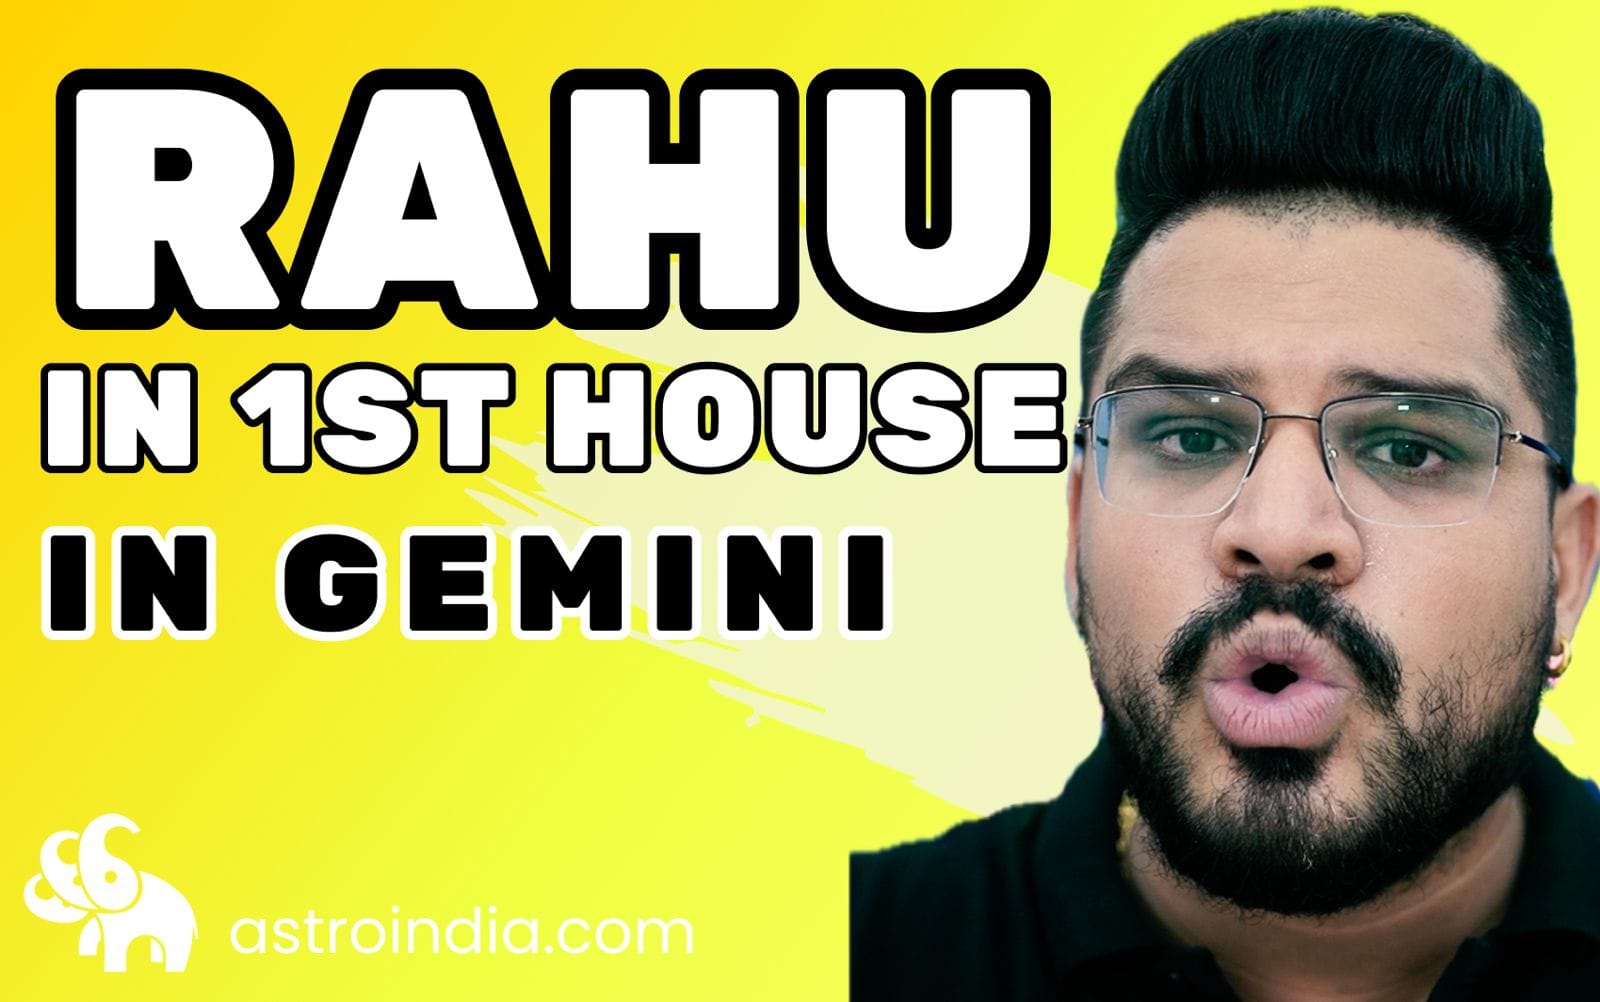 Rahu in the 1st House in Gemini